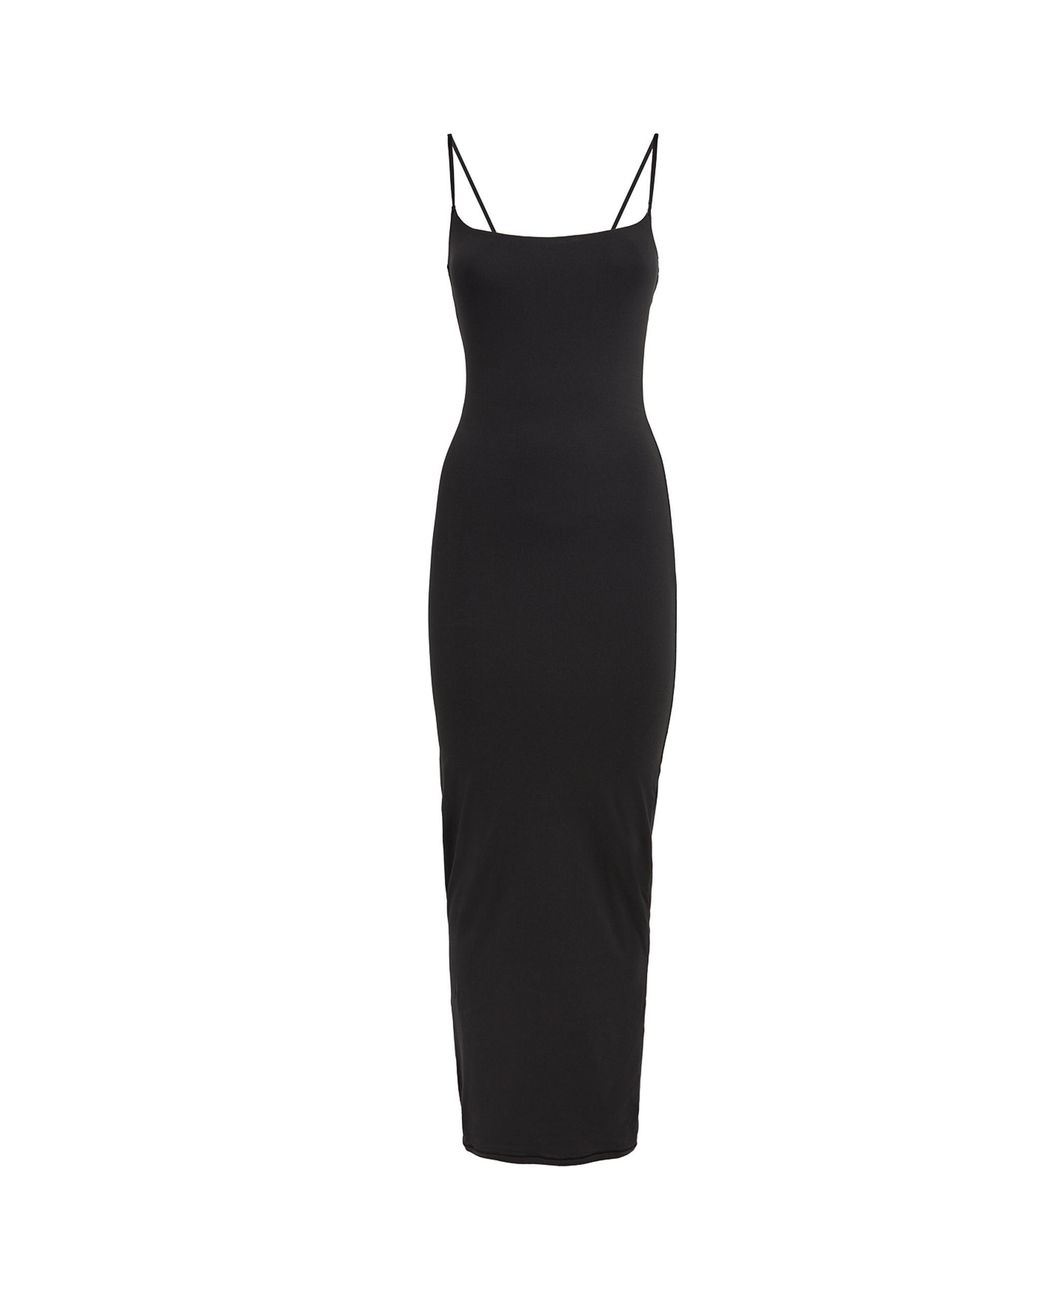 Skims Soft Lounge Long Slip Dress in Black | Lyst